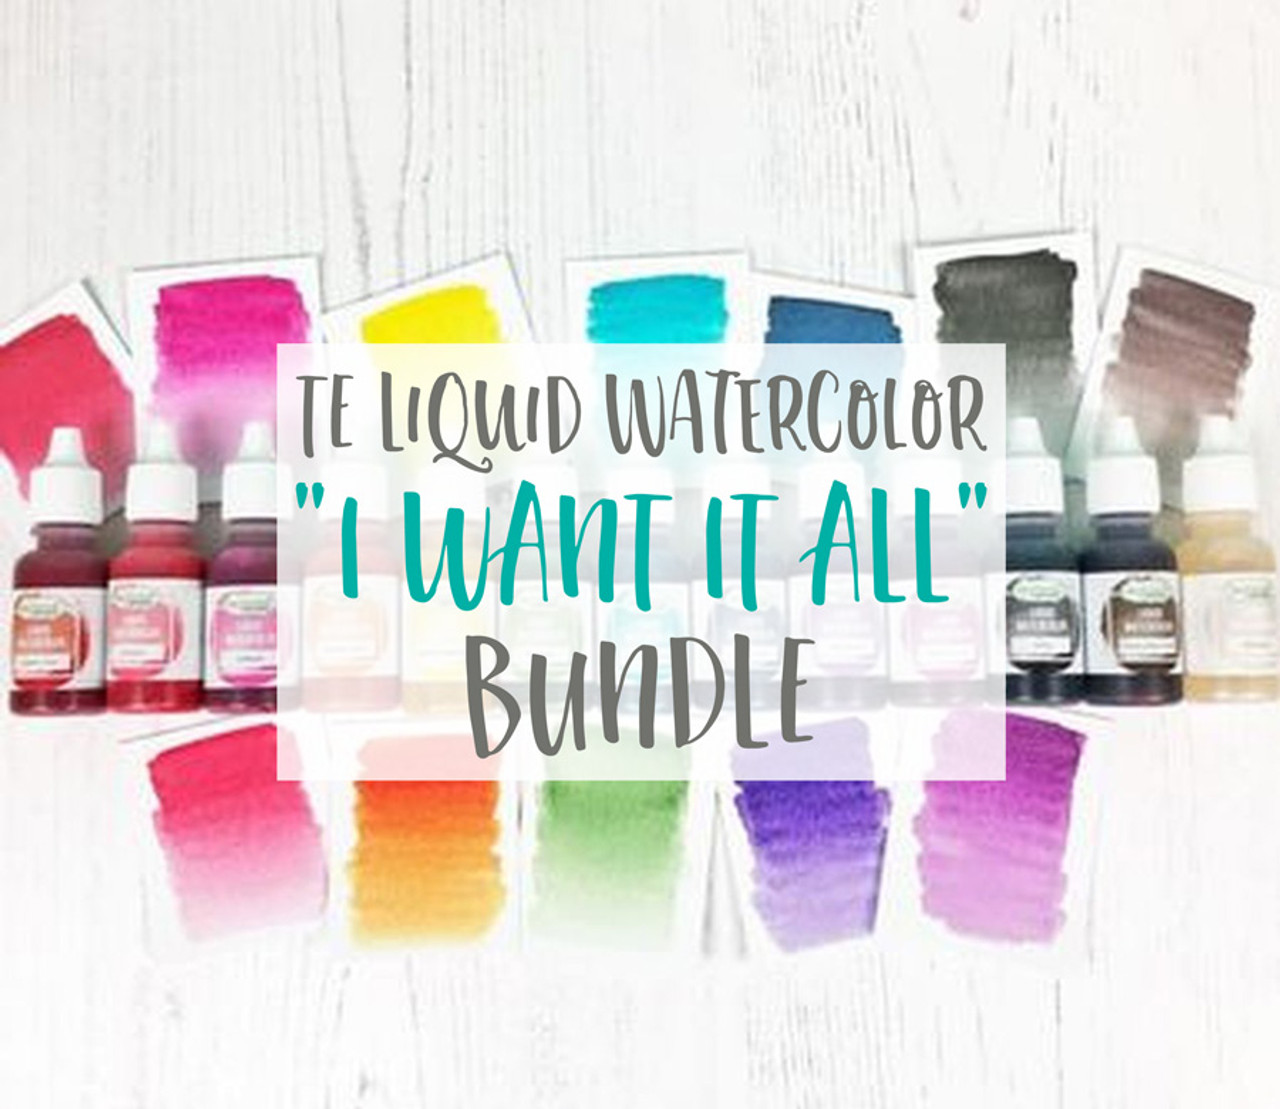 TE Liquid Watercolor I Want It All Bundle